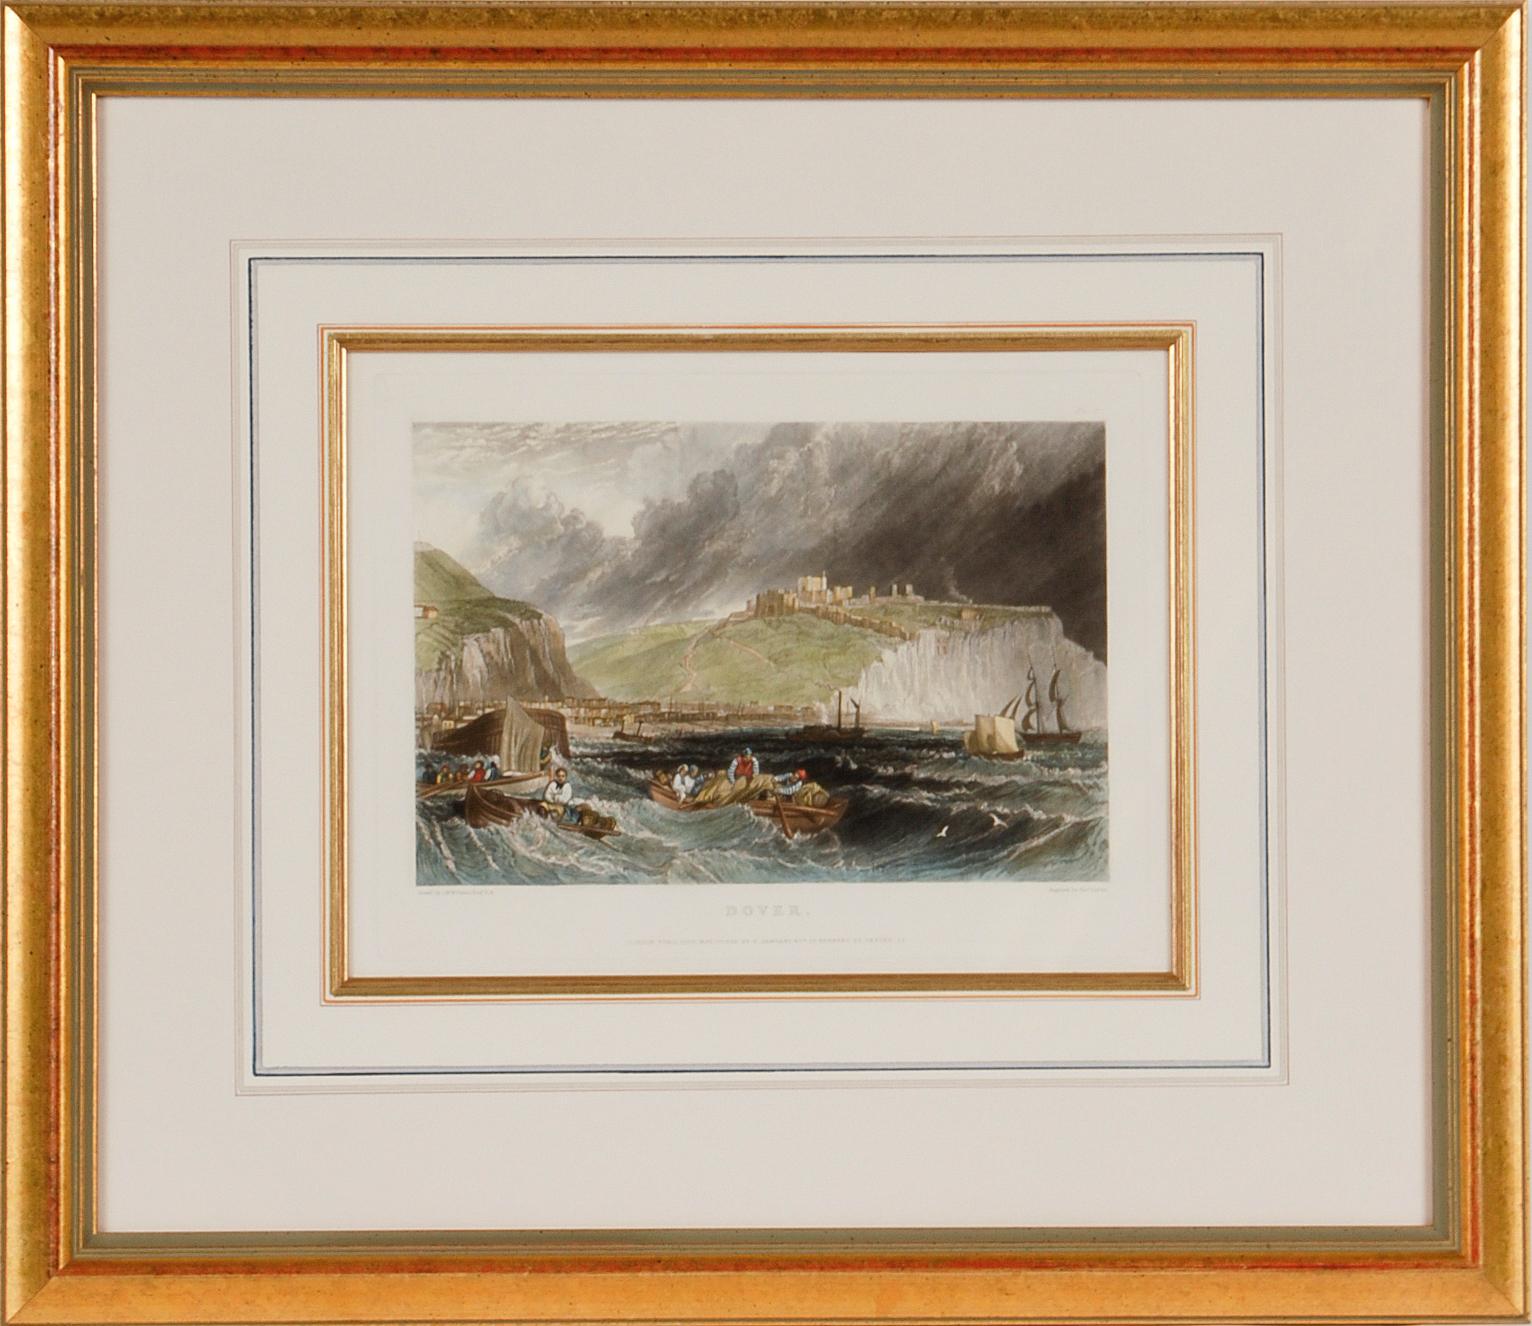 Une vue de Dover, Angleterre : une gravure encadrée du 19e siècle d'après J. M. W. Turner